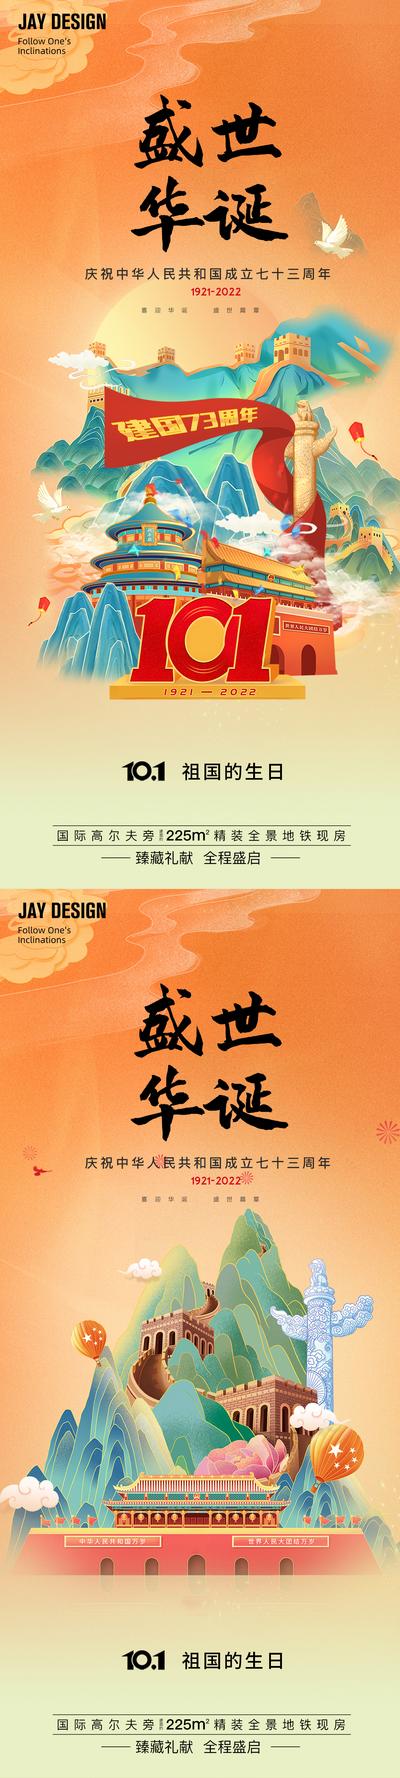 南门网 广告 海报 地产 国庆 医美 旅游 节日 周年庆 中式 国潮 中国风 系列